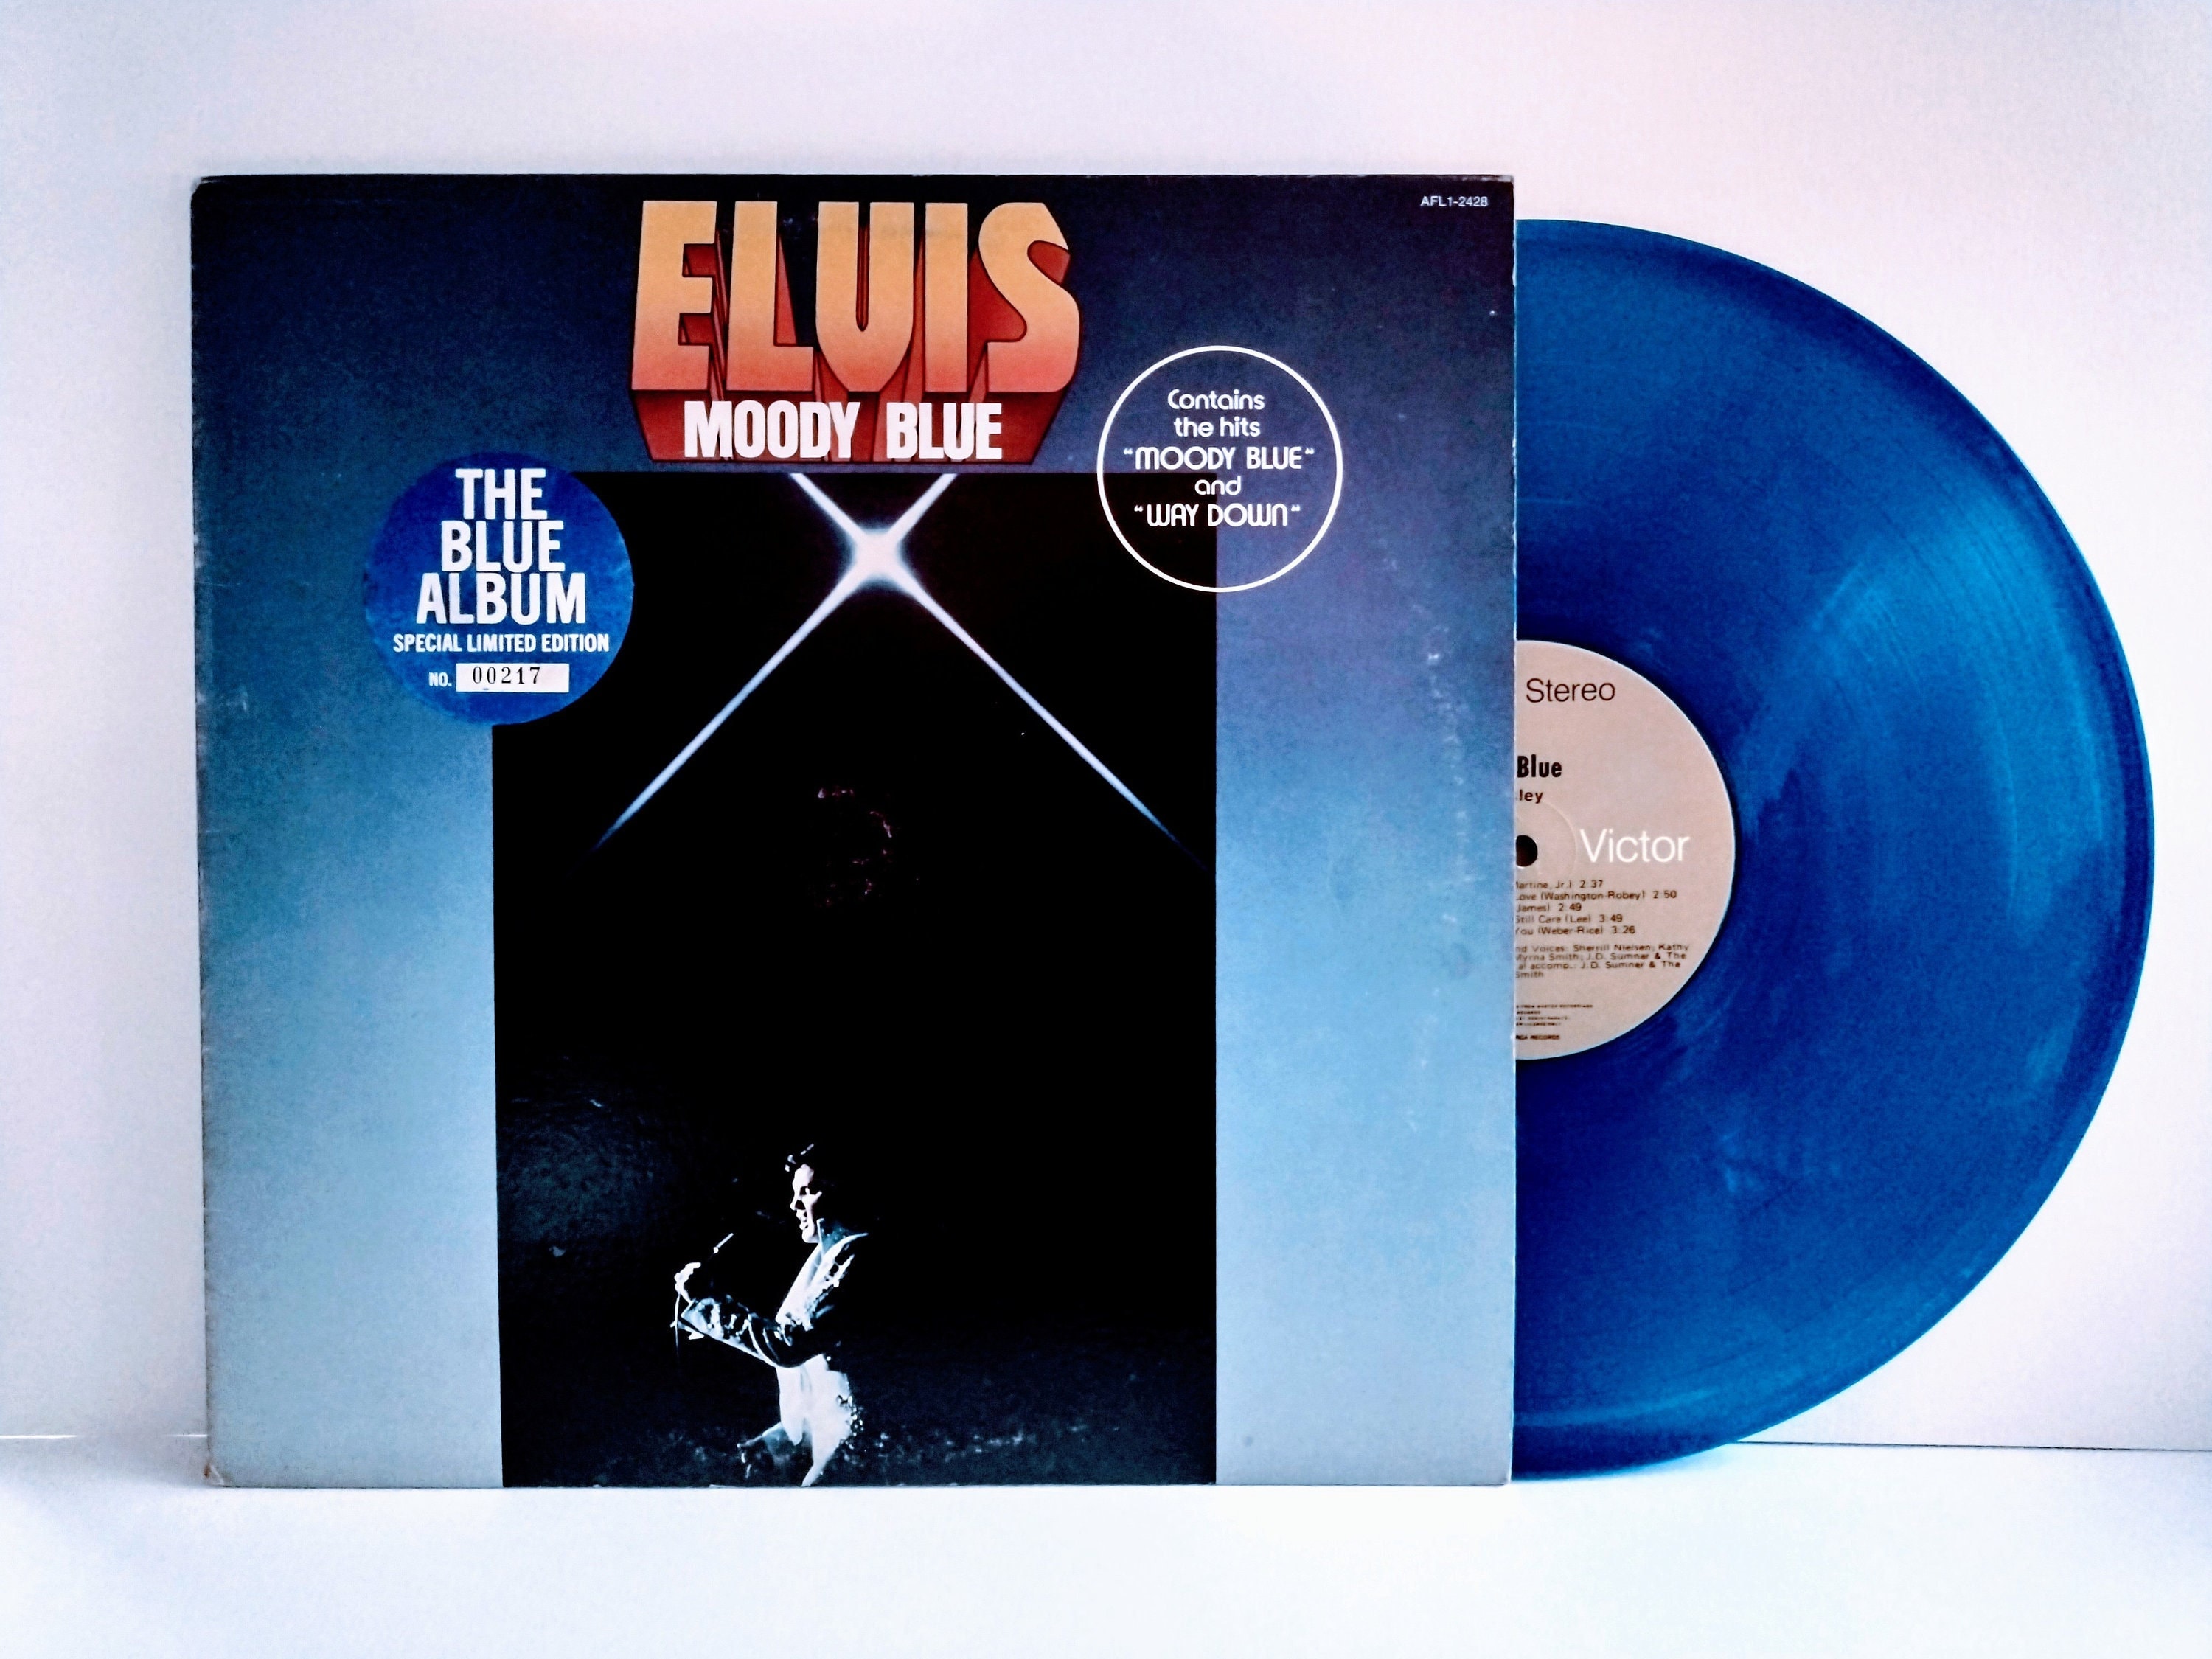 ELVIS PRESLEY Moody Blue The Blue Album Special Limited - Etsy.de